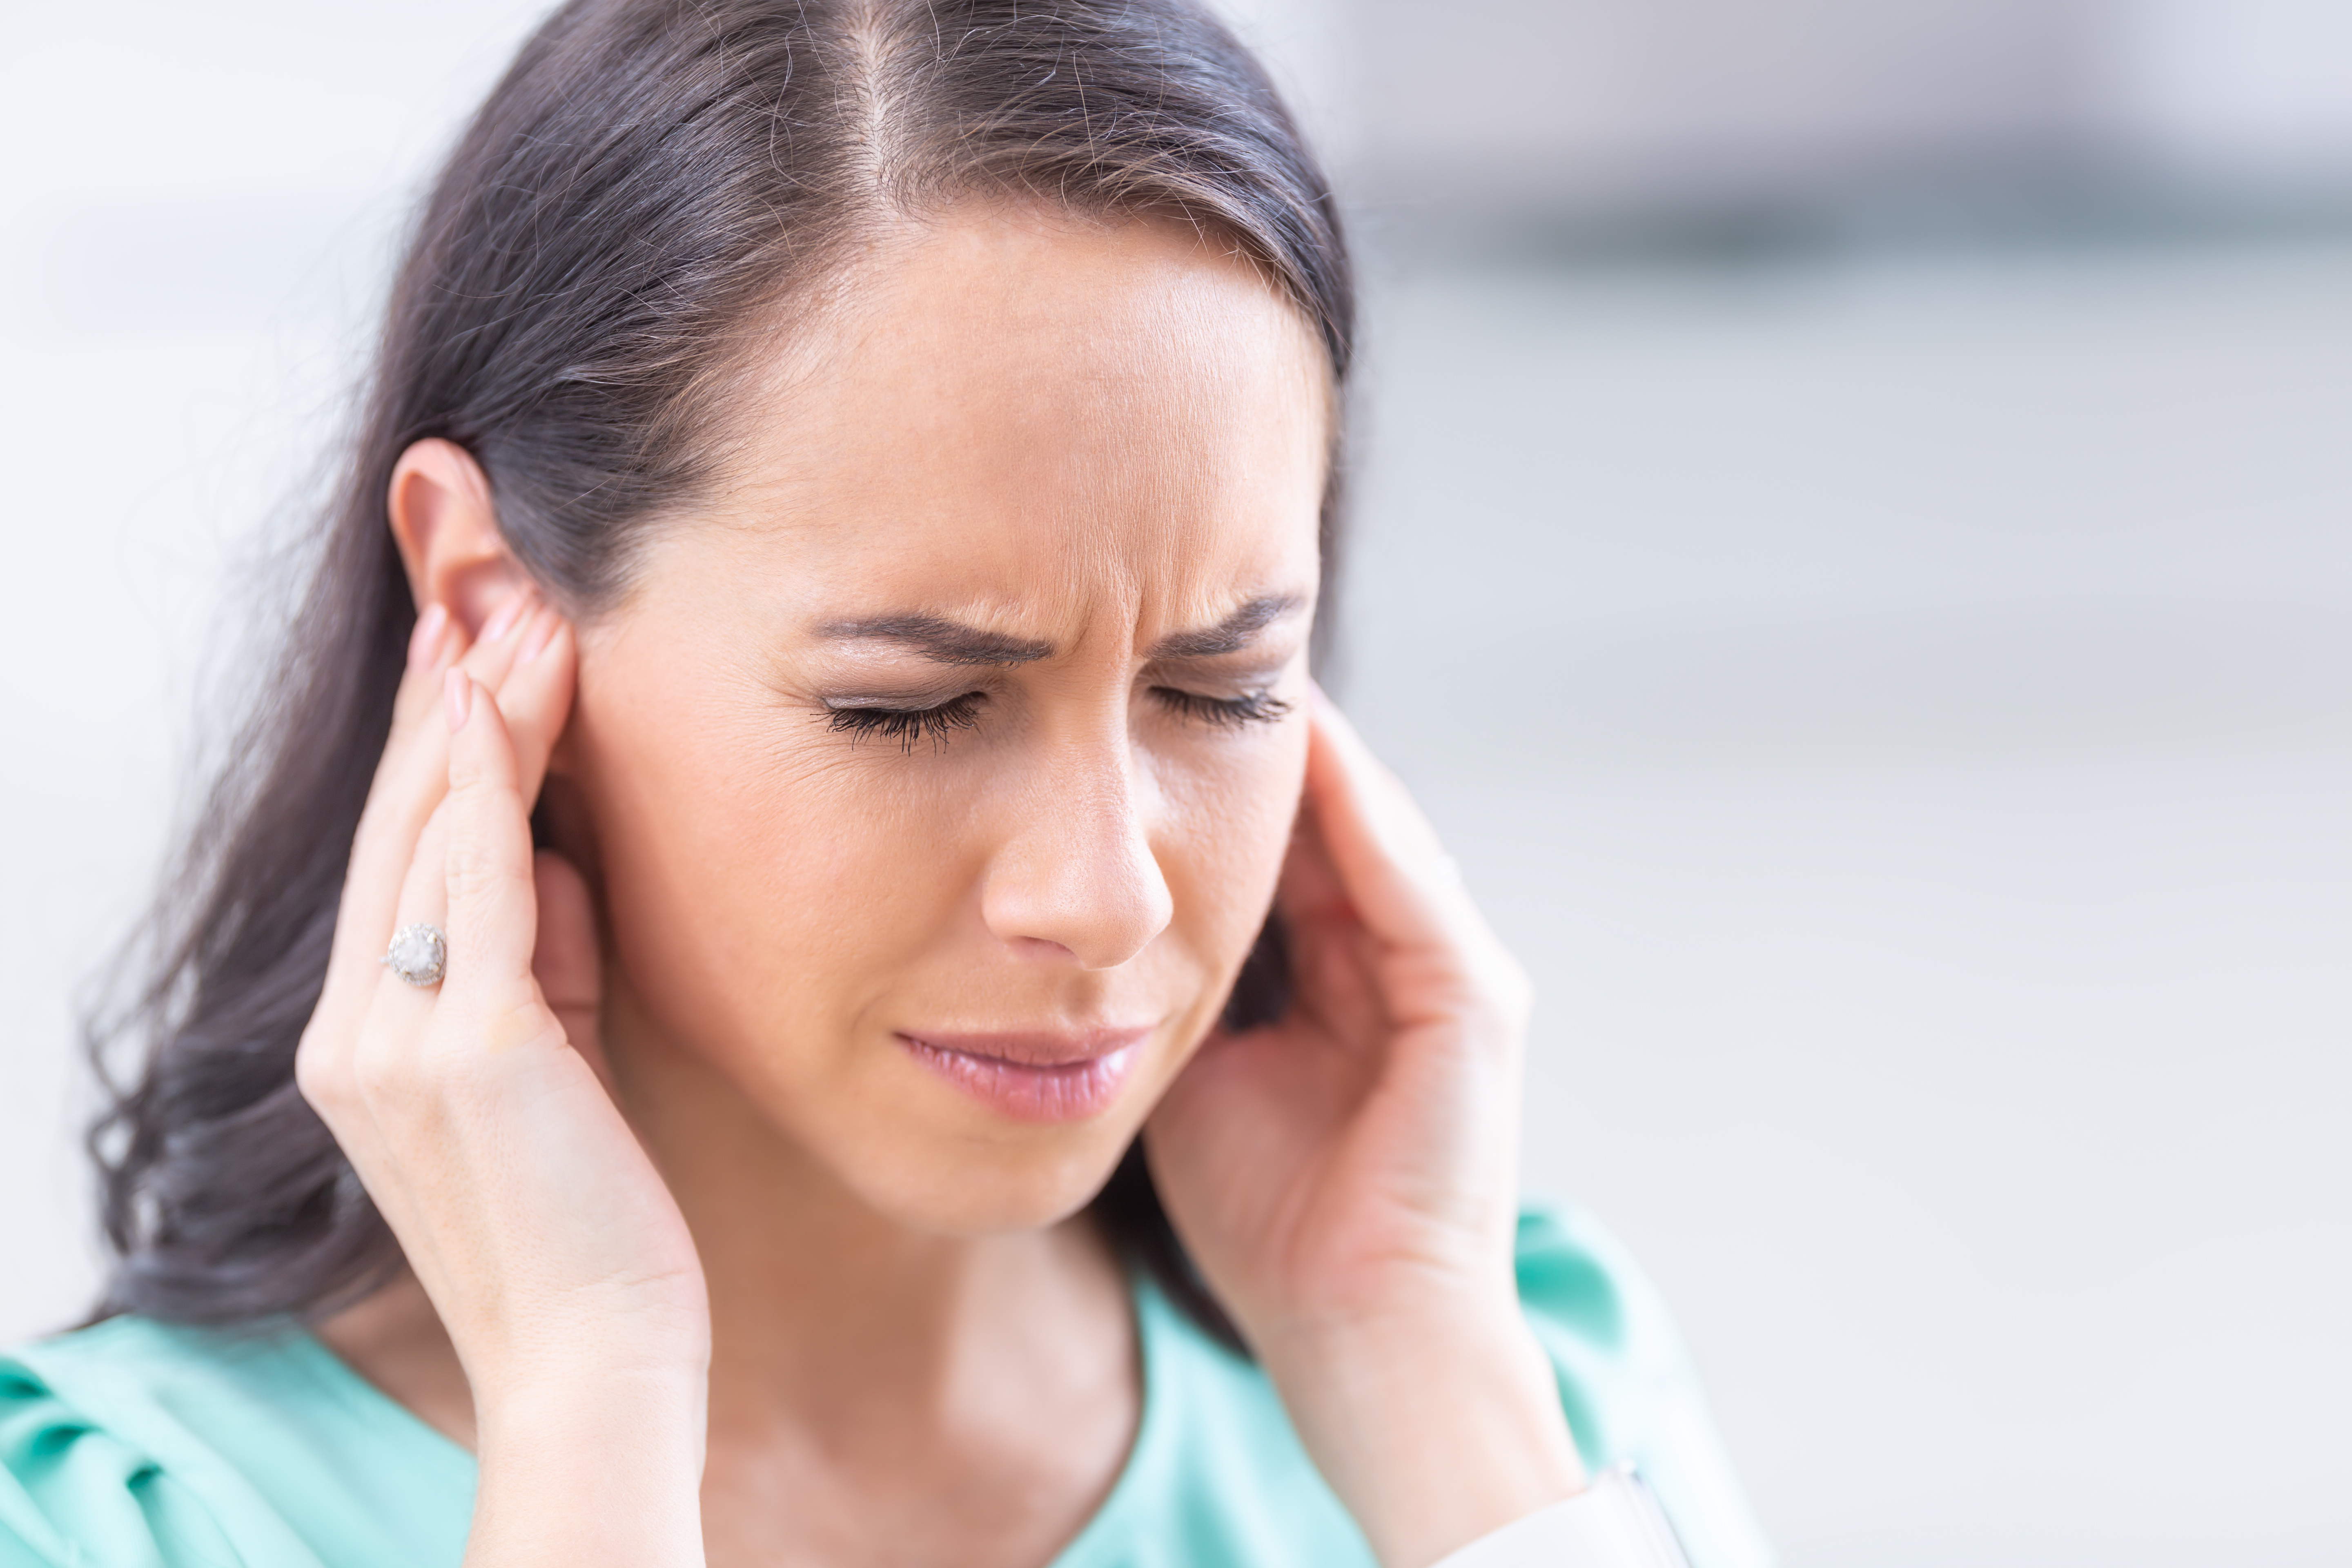 L'acupuncture peut permettre de calmer les maux de tête chez les personnes souffrant de céphalées de tension chroniques (Visuel Adobe Stock 326993165)